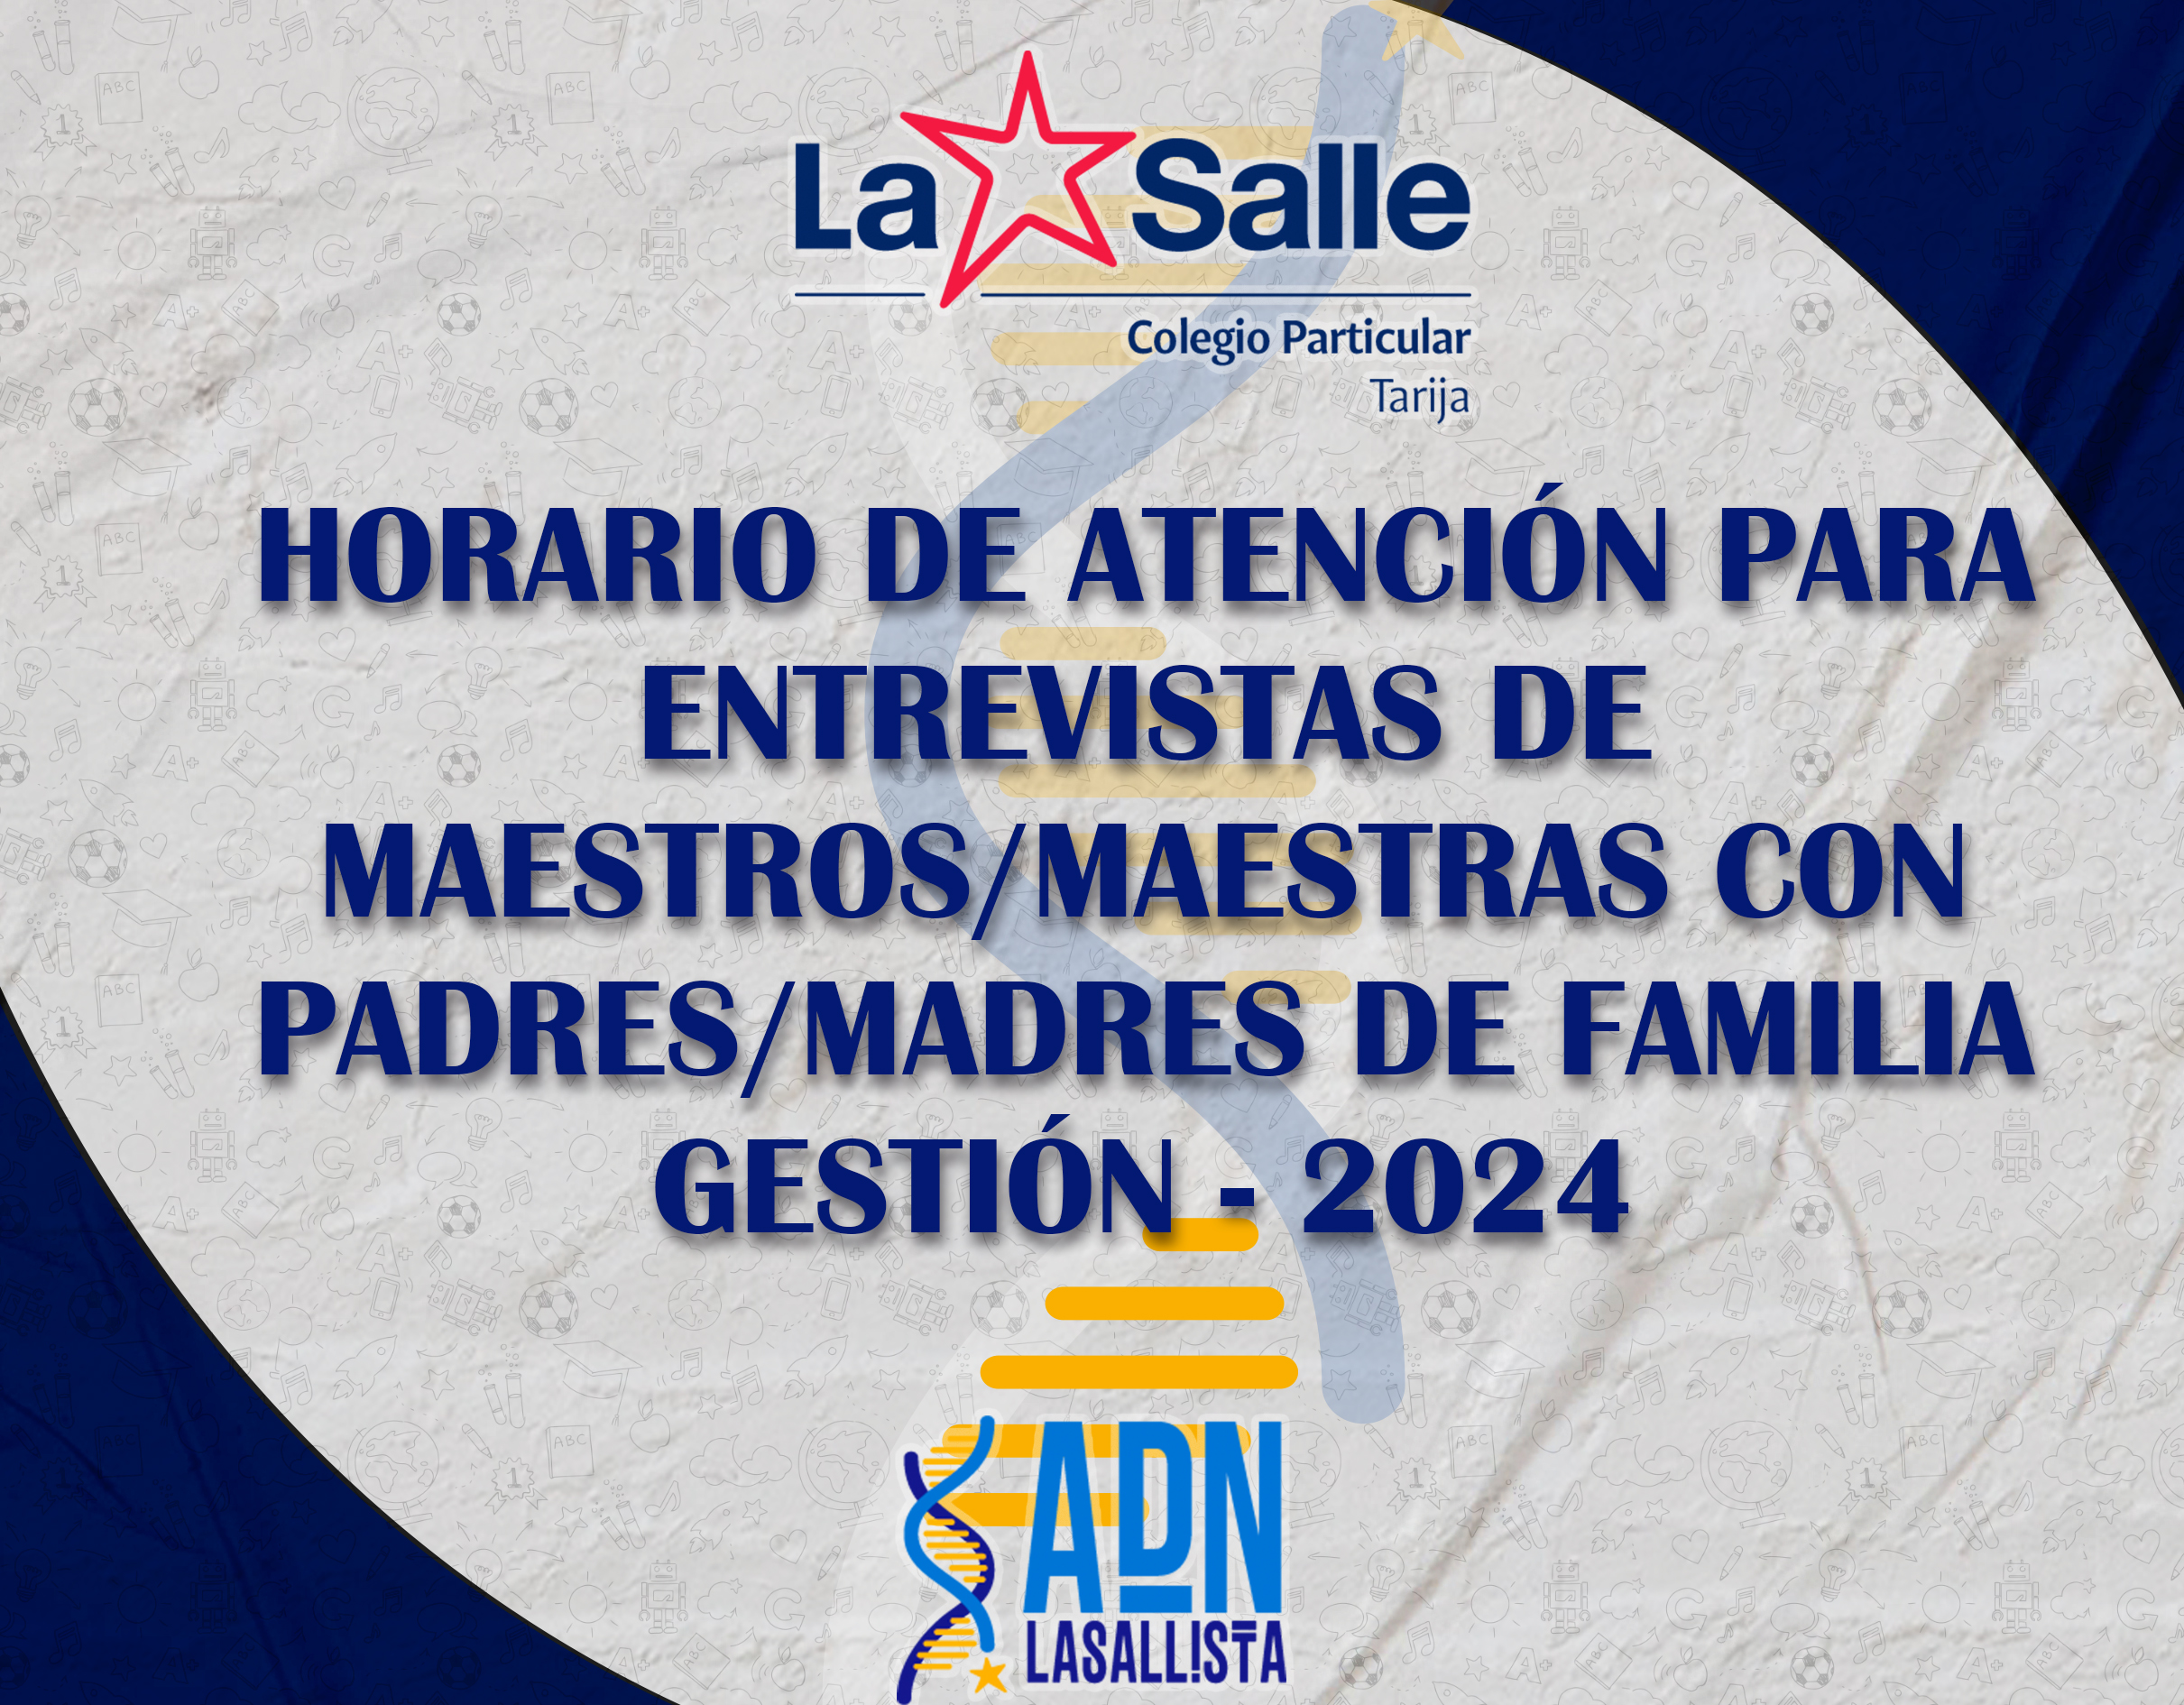 HORARIO DE ATENCIÓN PARA ENTREVISTAS DE MAESTROS/MAESTRAS CON PADRES/MADRES DE FAMILIA GESTIÓN-2024